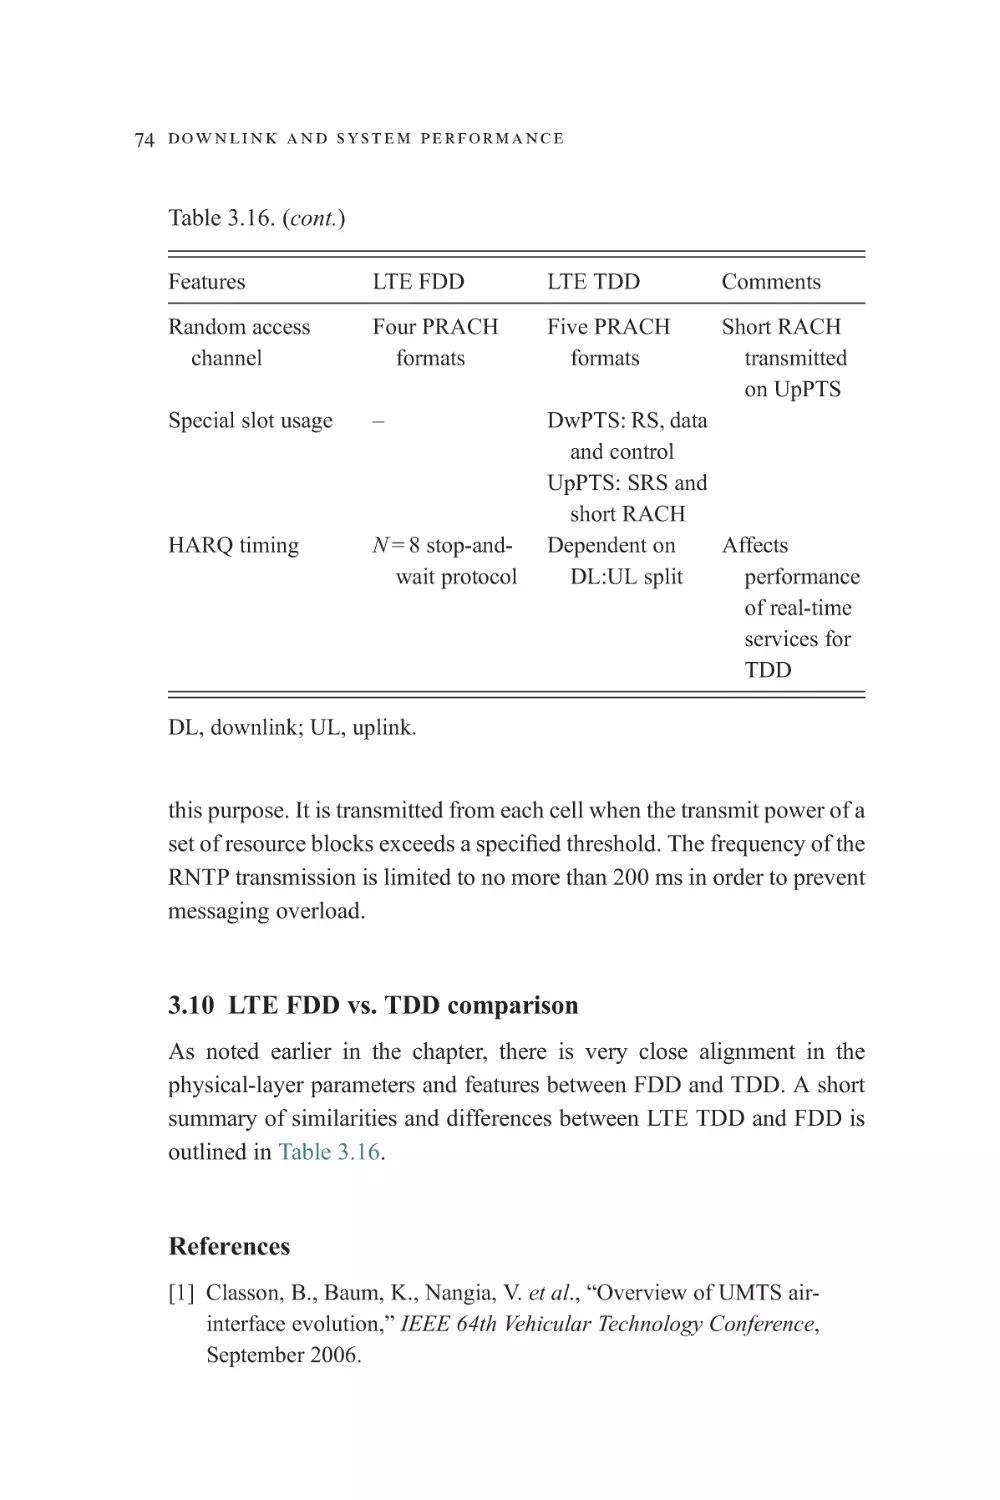 3.10 LTE FDD vs. TDD comparison
References